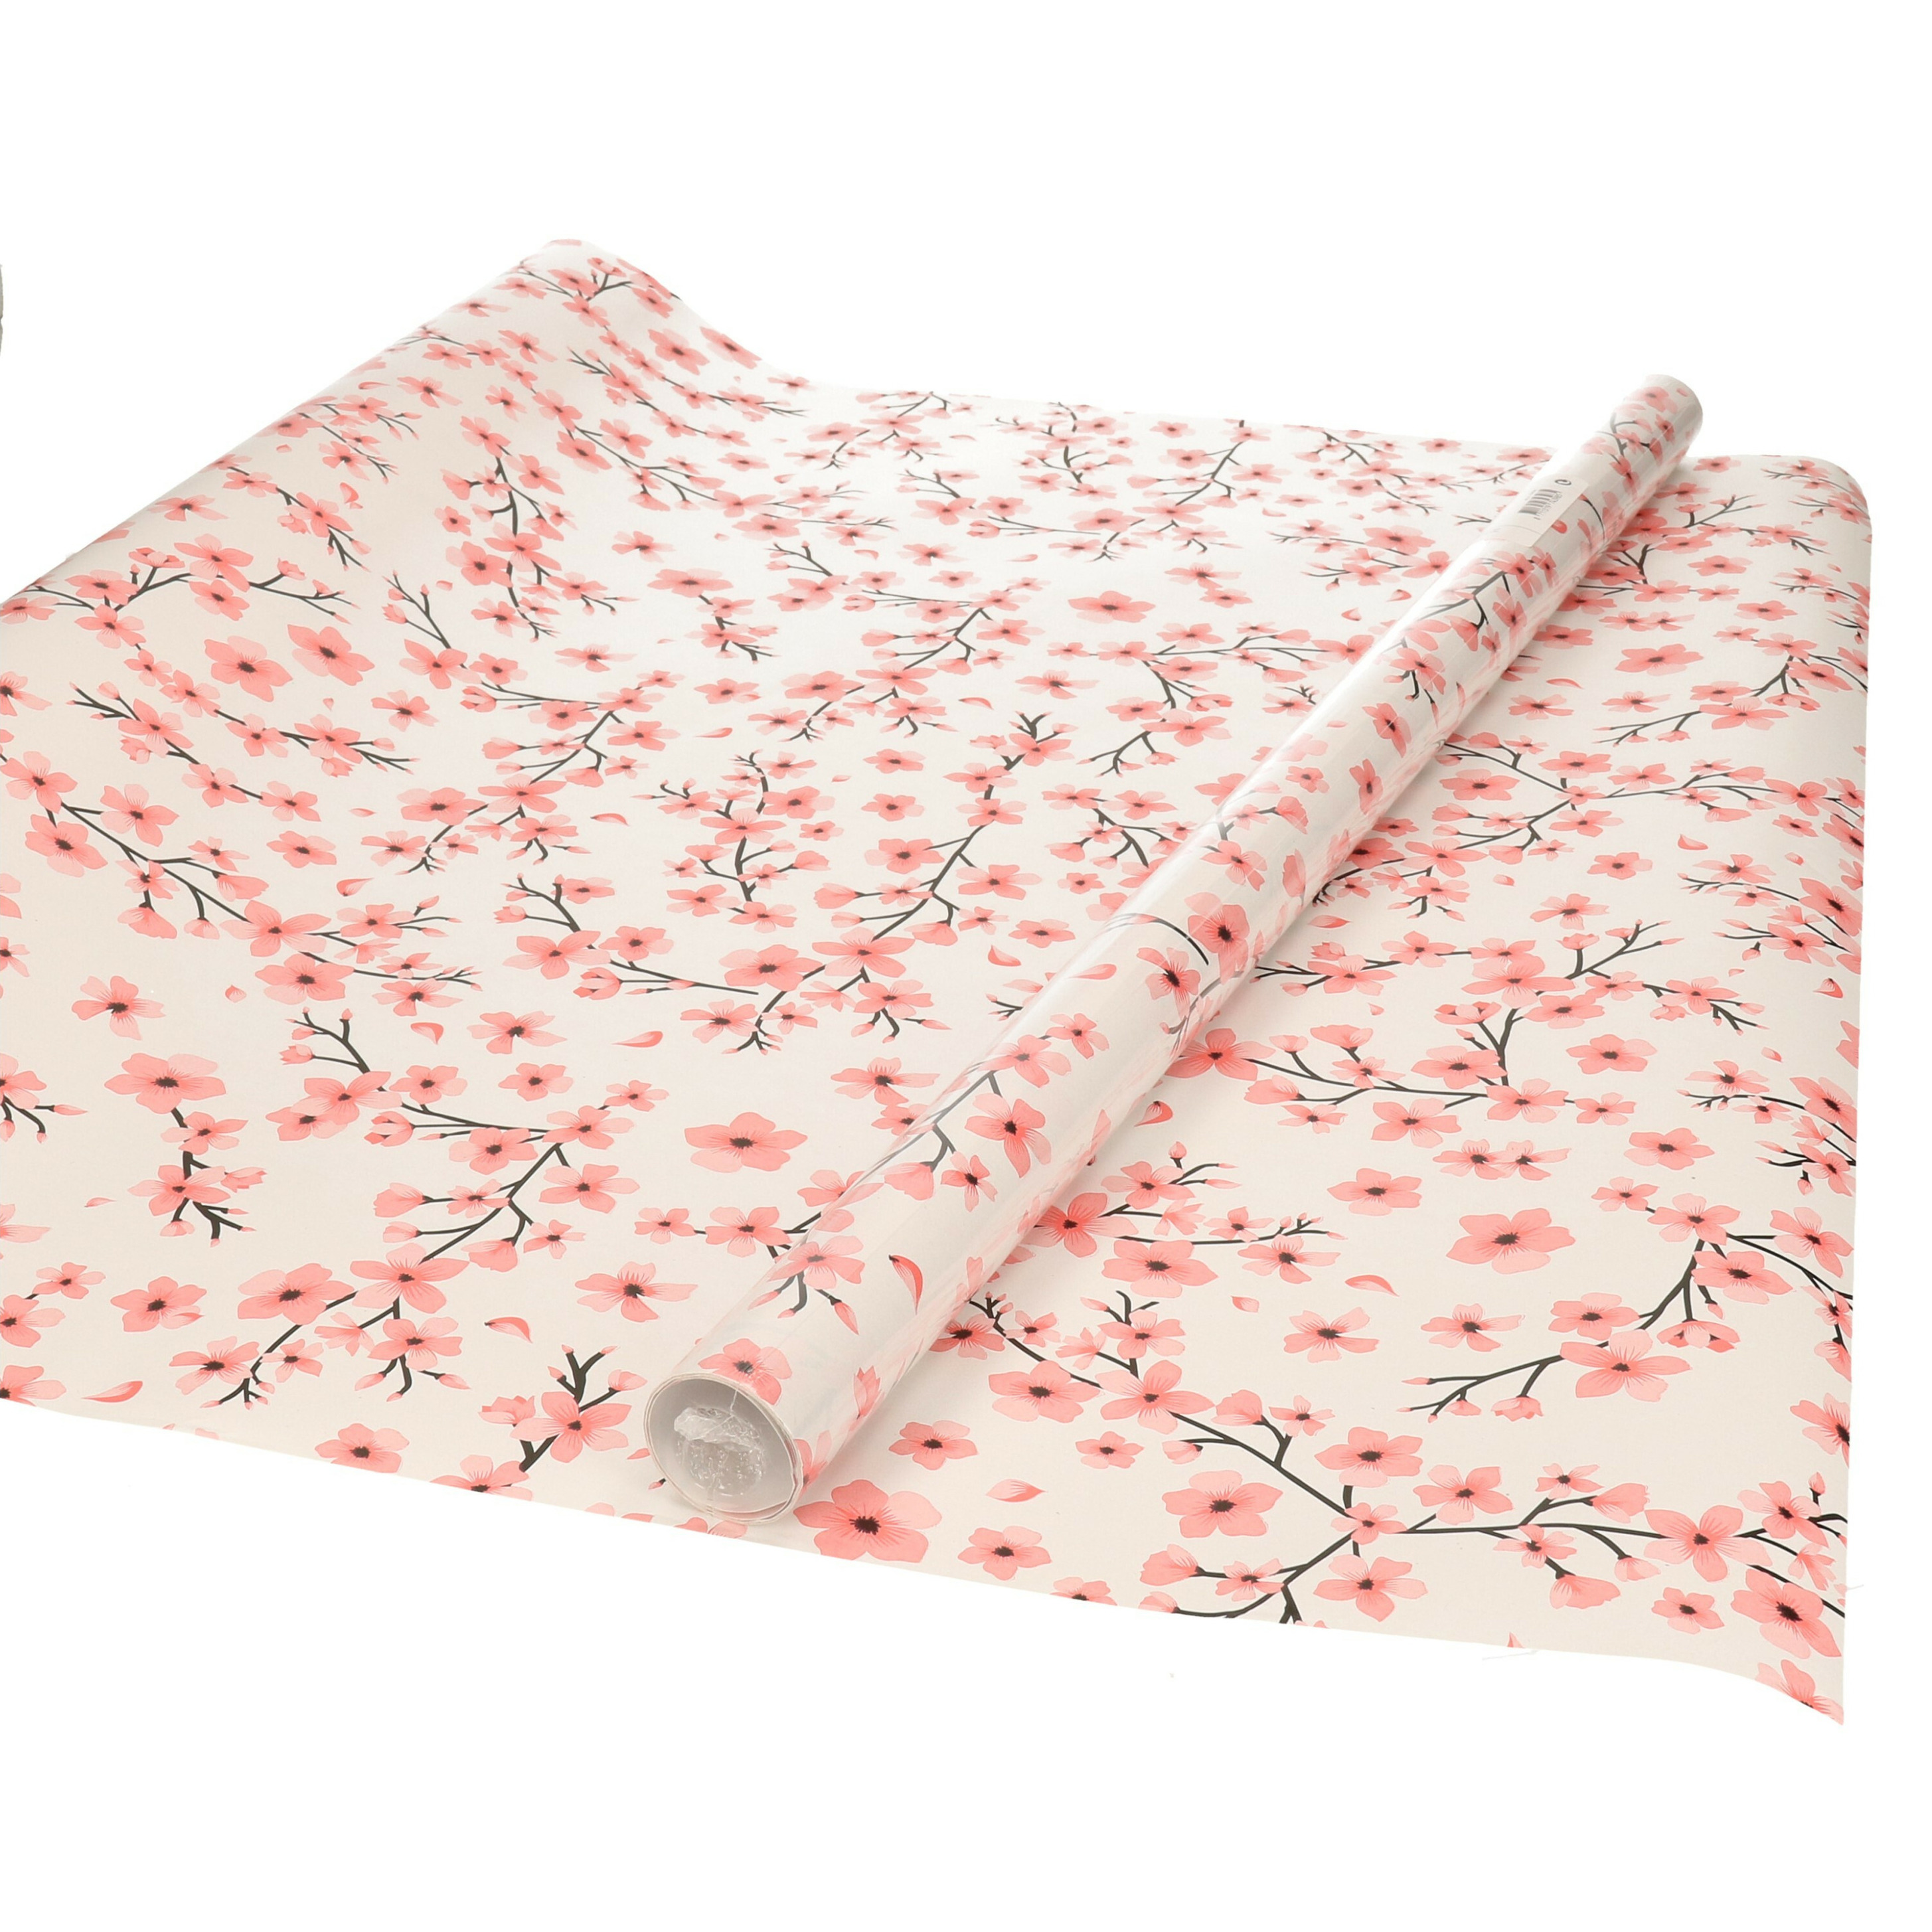 Inpakpapier/cadeaupapier - wit met roze bloemen design - 200 x 70 cm